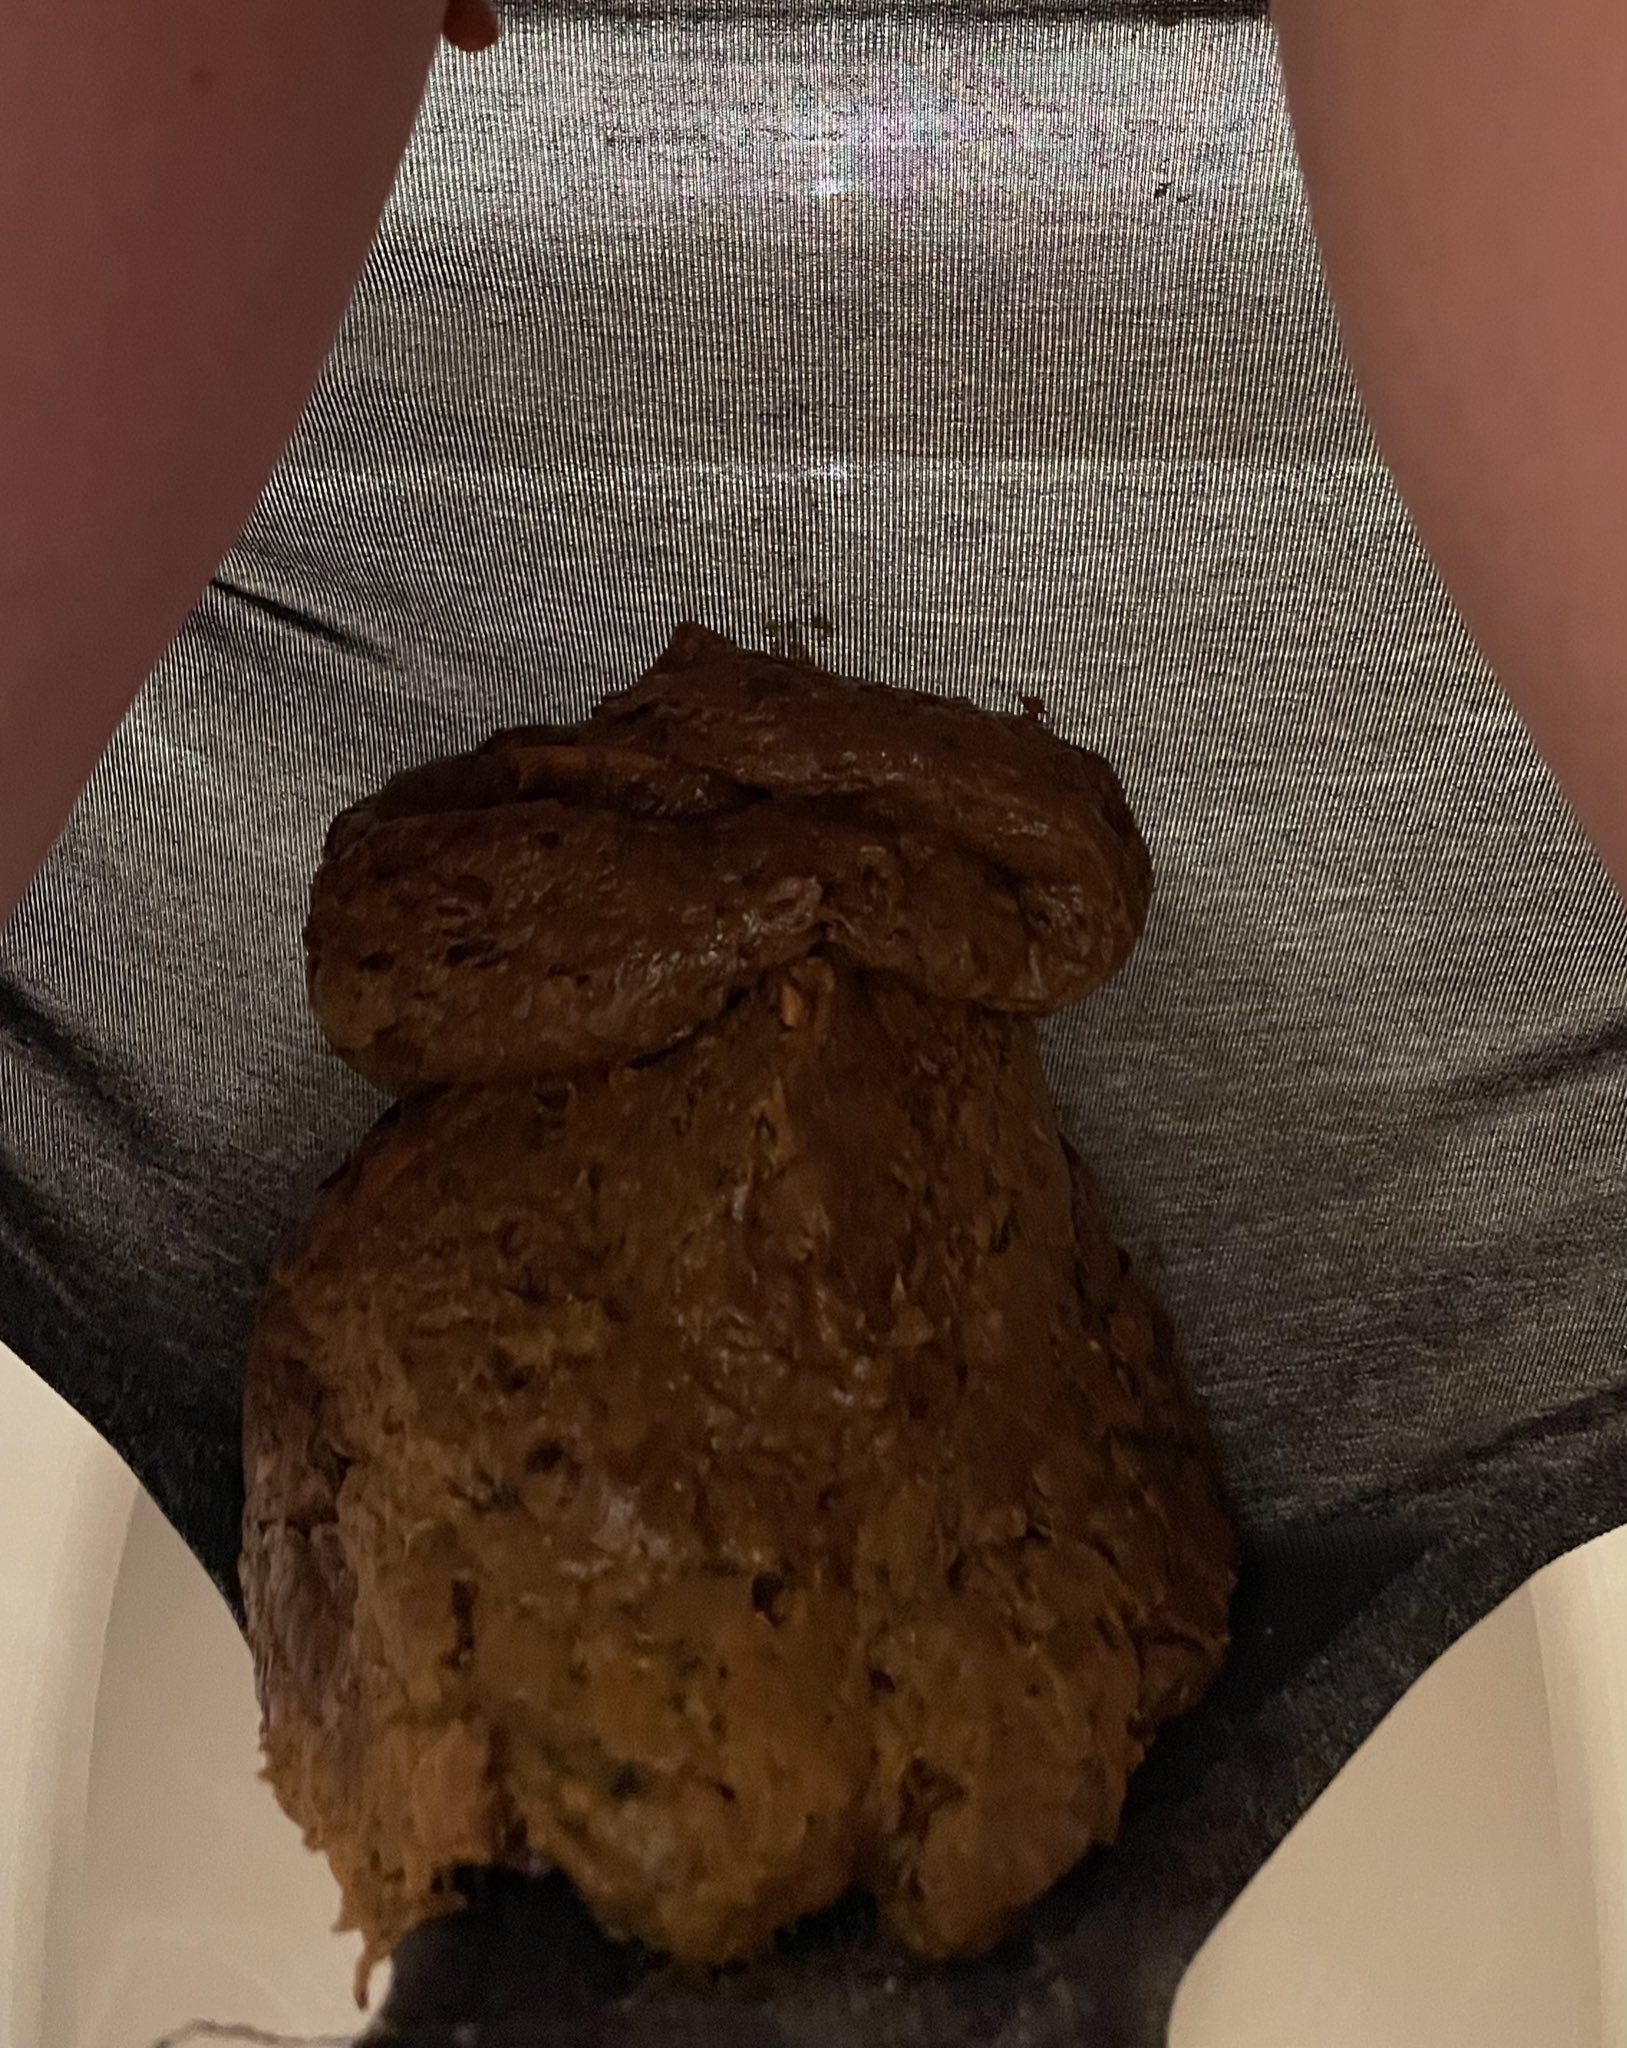 Japanese girl panty poop 9